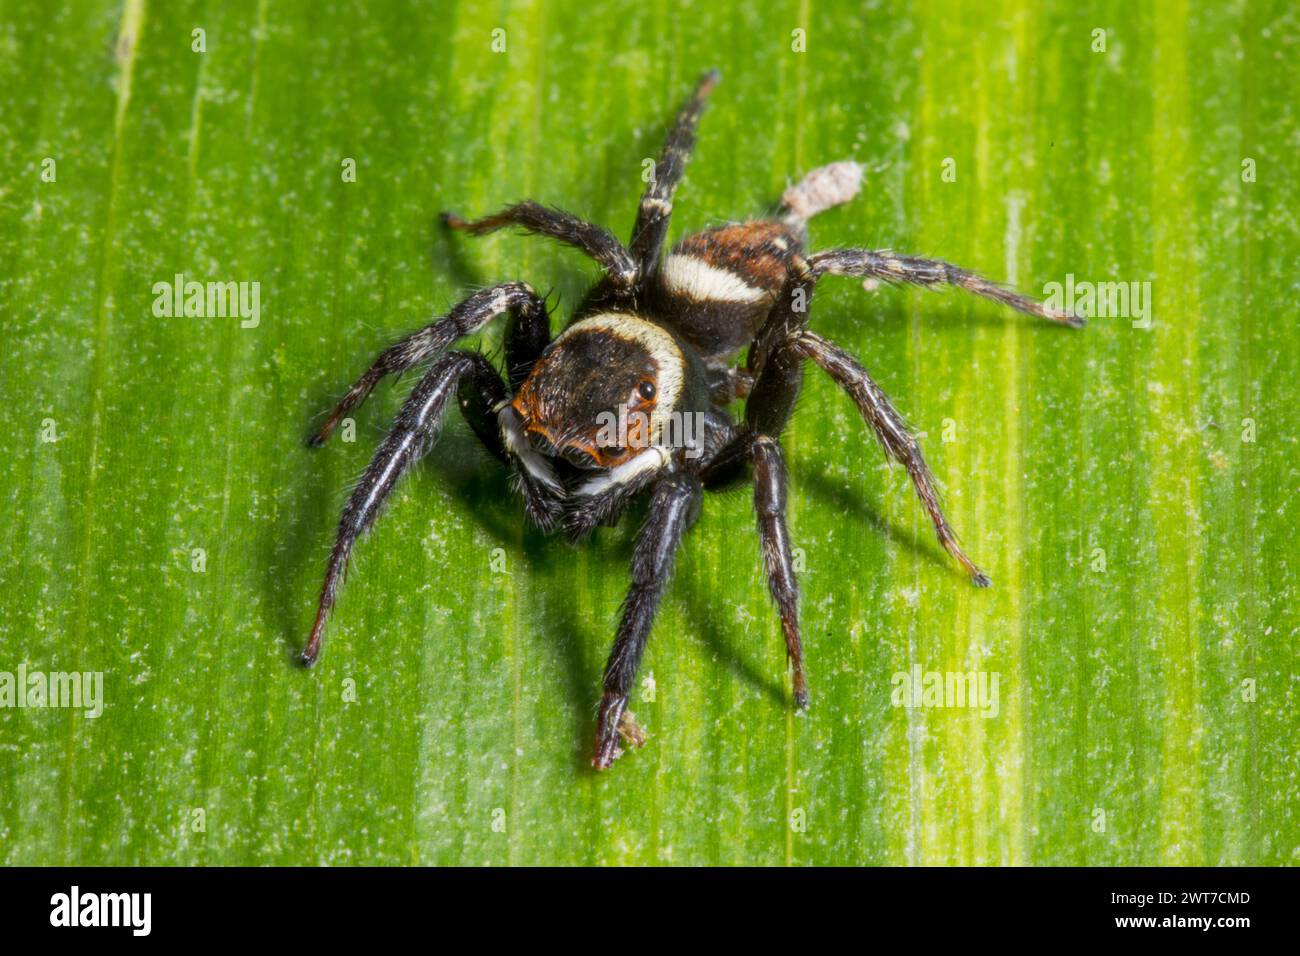 Saltador de casa de Adanson saltando araña (Hasarius adansoni) macho adulto en una hoja. Se encuentra en un centro de jardín. Carrmarthenshire, Gales. Noviembre. Foto de stock